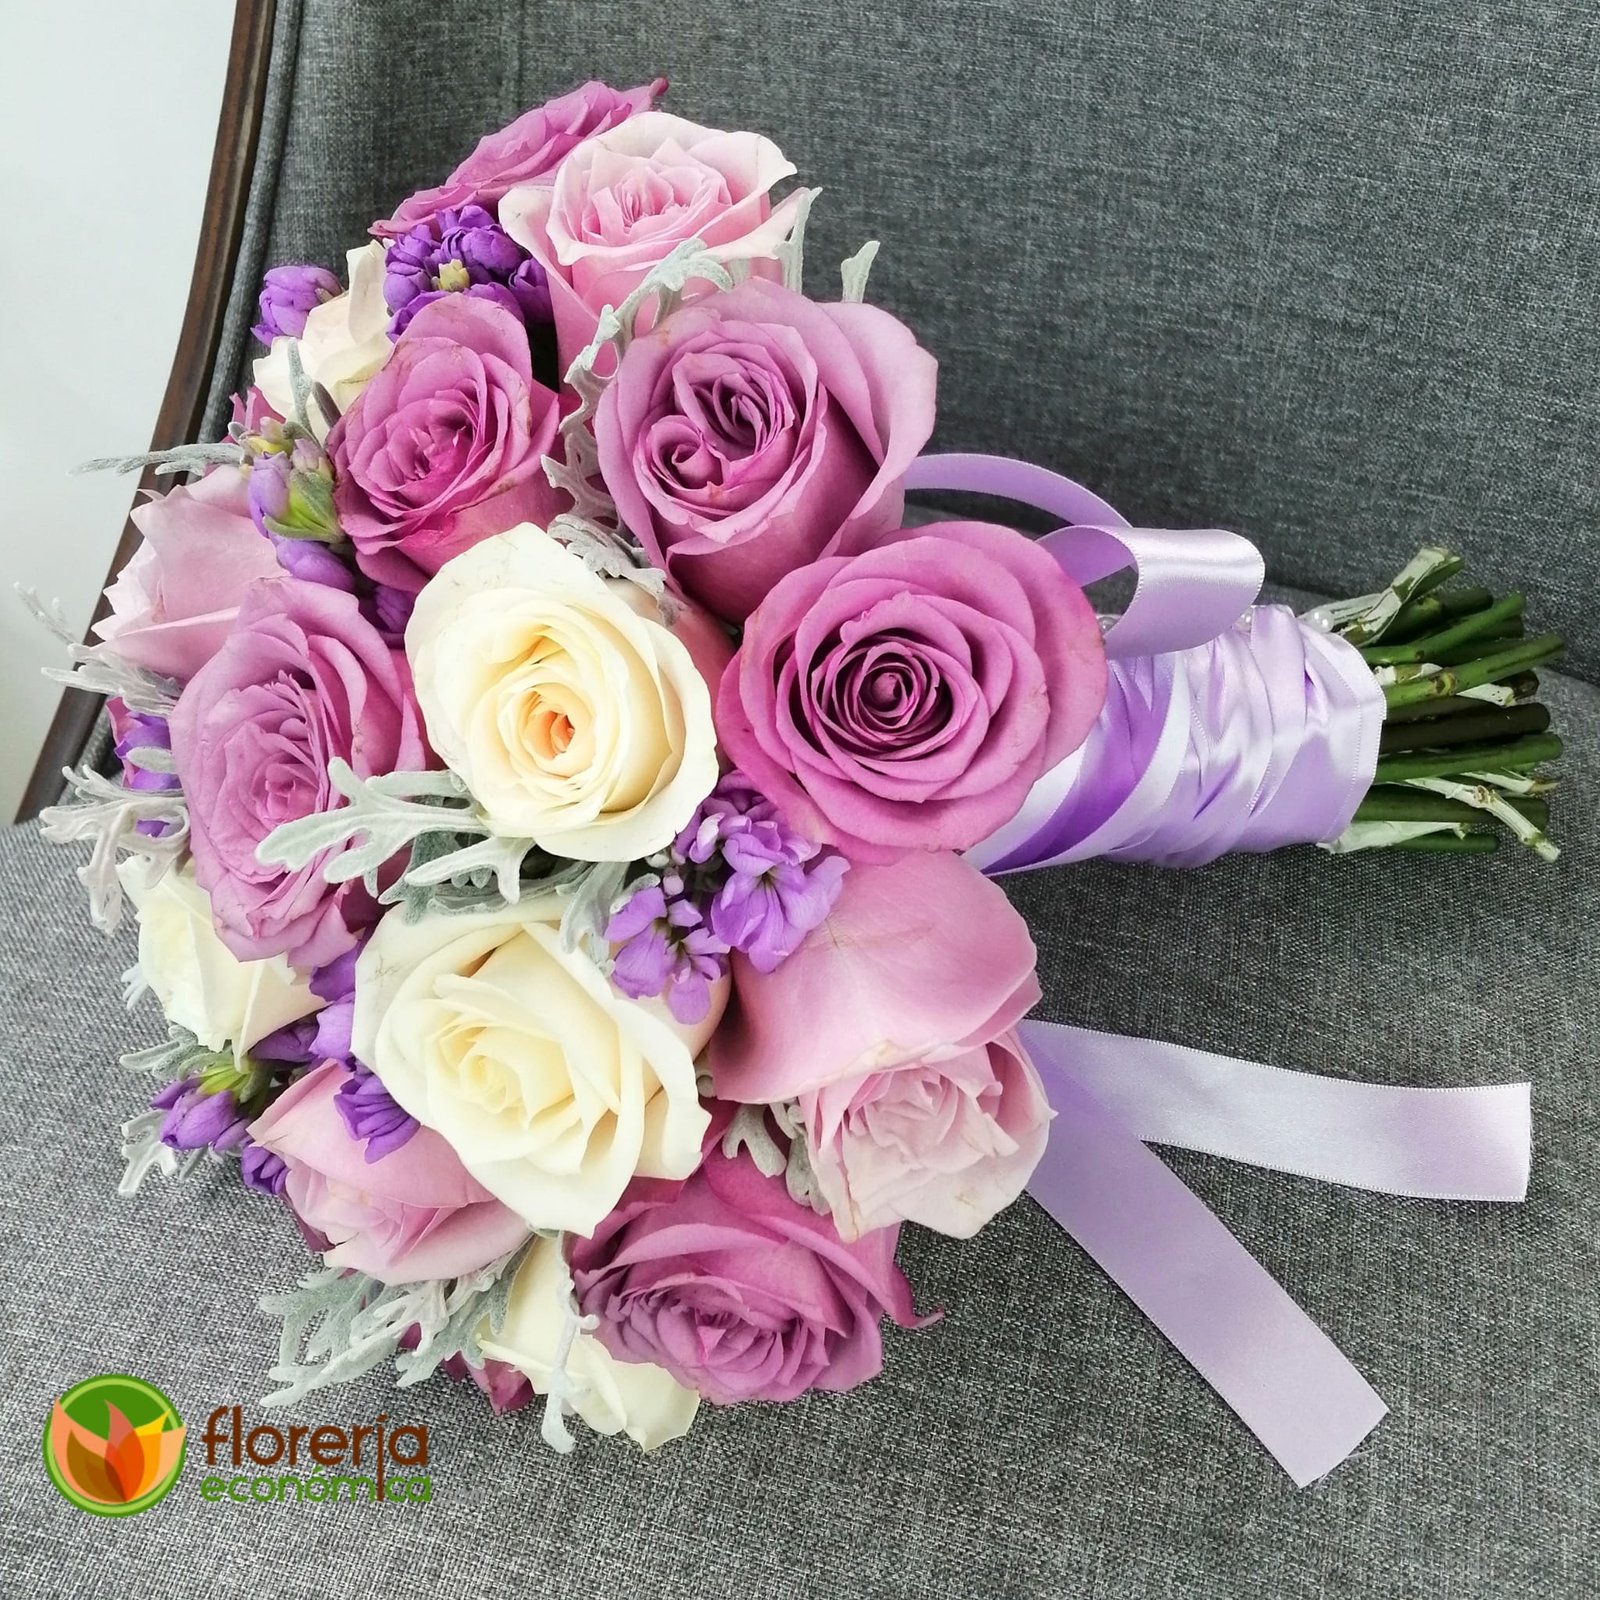 Ramo de novia con rosas lilas, rosas y ivory - Floreria Economica